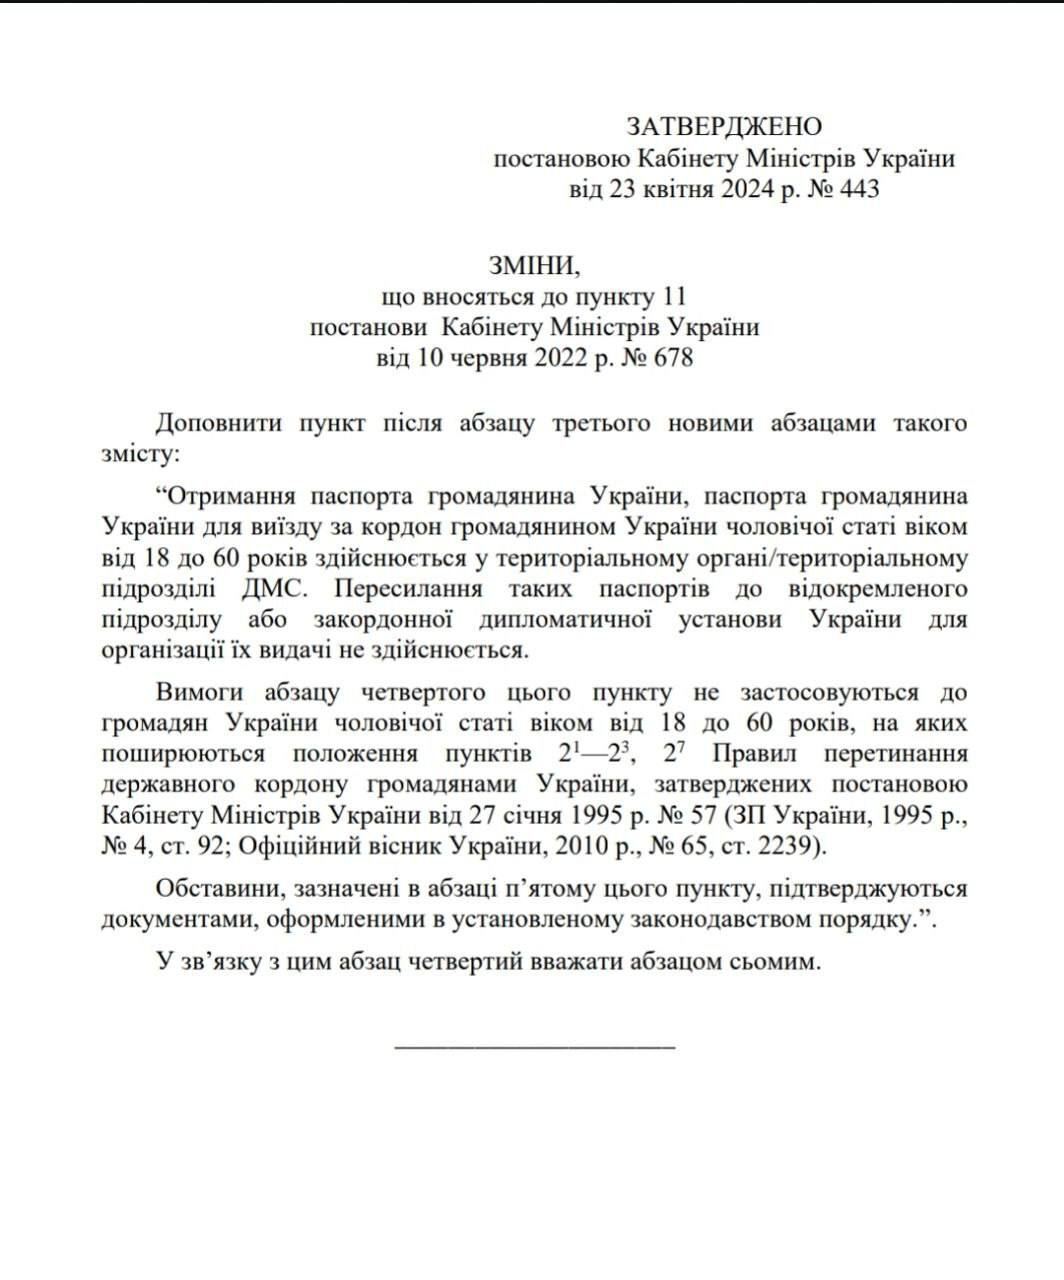 Месть, нарушение Конституции или законные действия по мобилизации: к чему приведут консульские ограничения для украинцев за границей